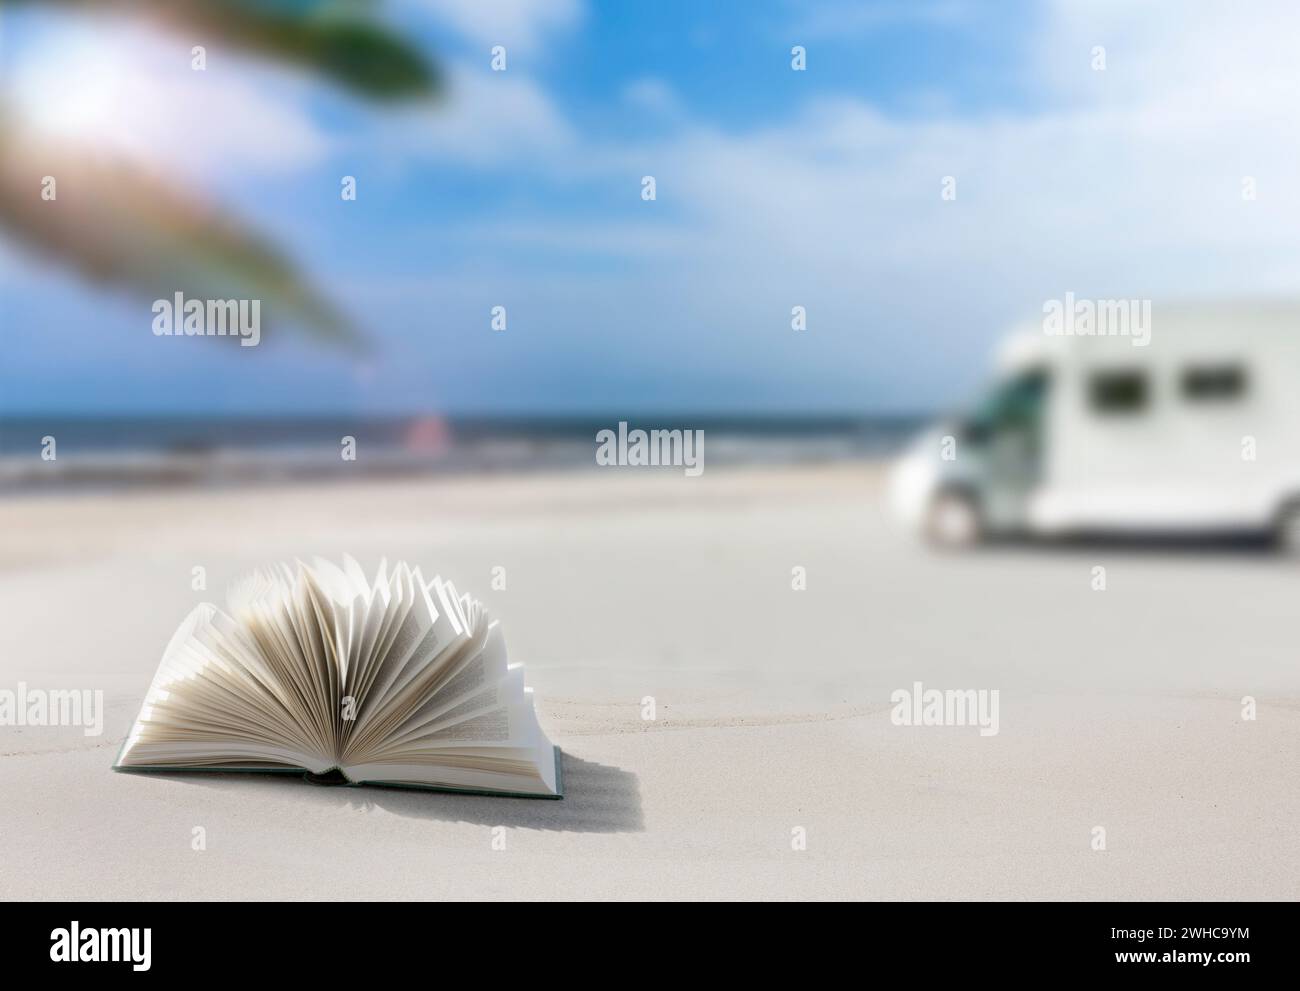 Wohnmobil an einem Sandstrand mit verschwommenem Hintergrund, Buch im Vordergrund Stockfoto